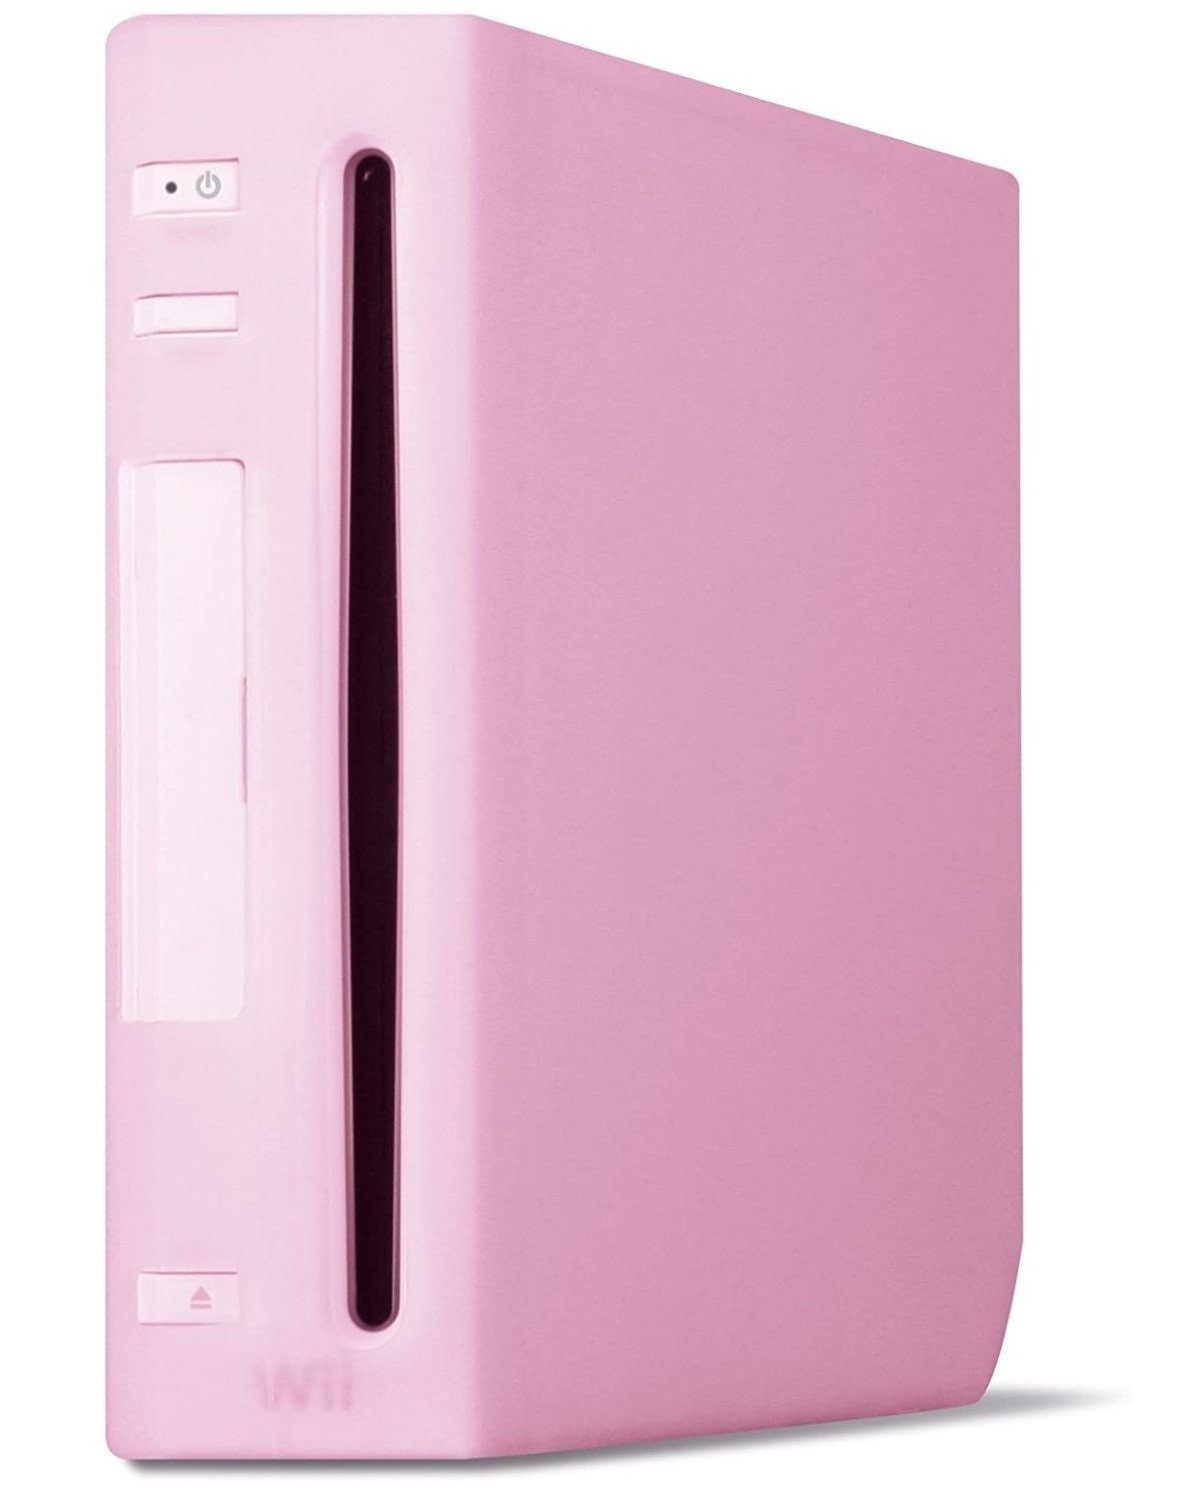 Speedlink Konsolen-Tasche Silikon Skin Schutz-Hülle Pink, passend für Nintendo Wii Konsole